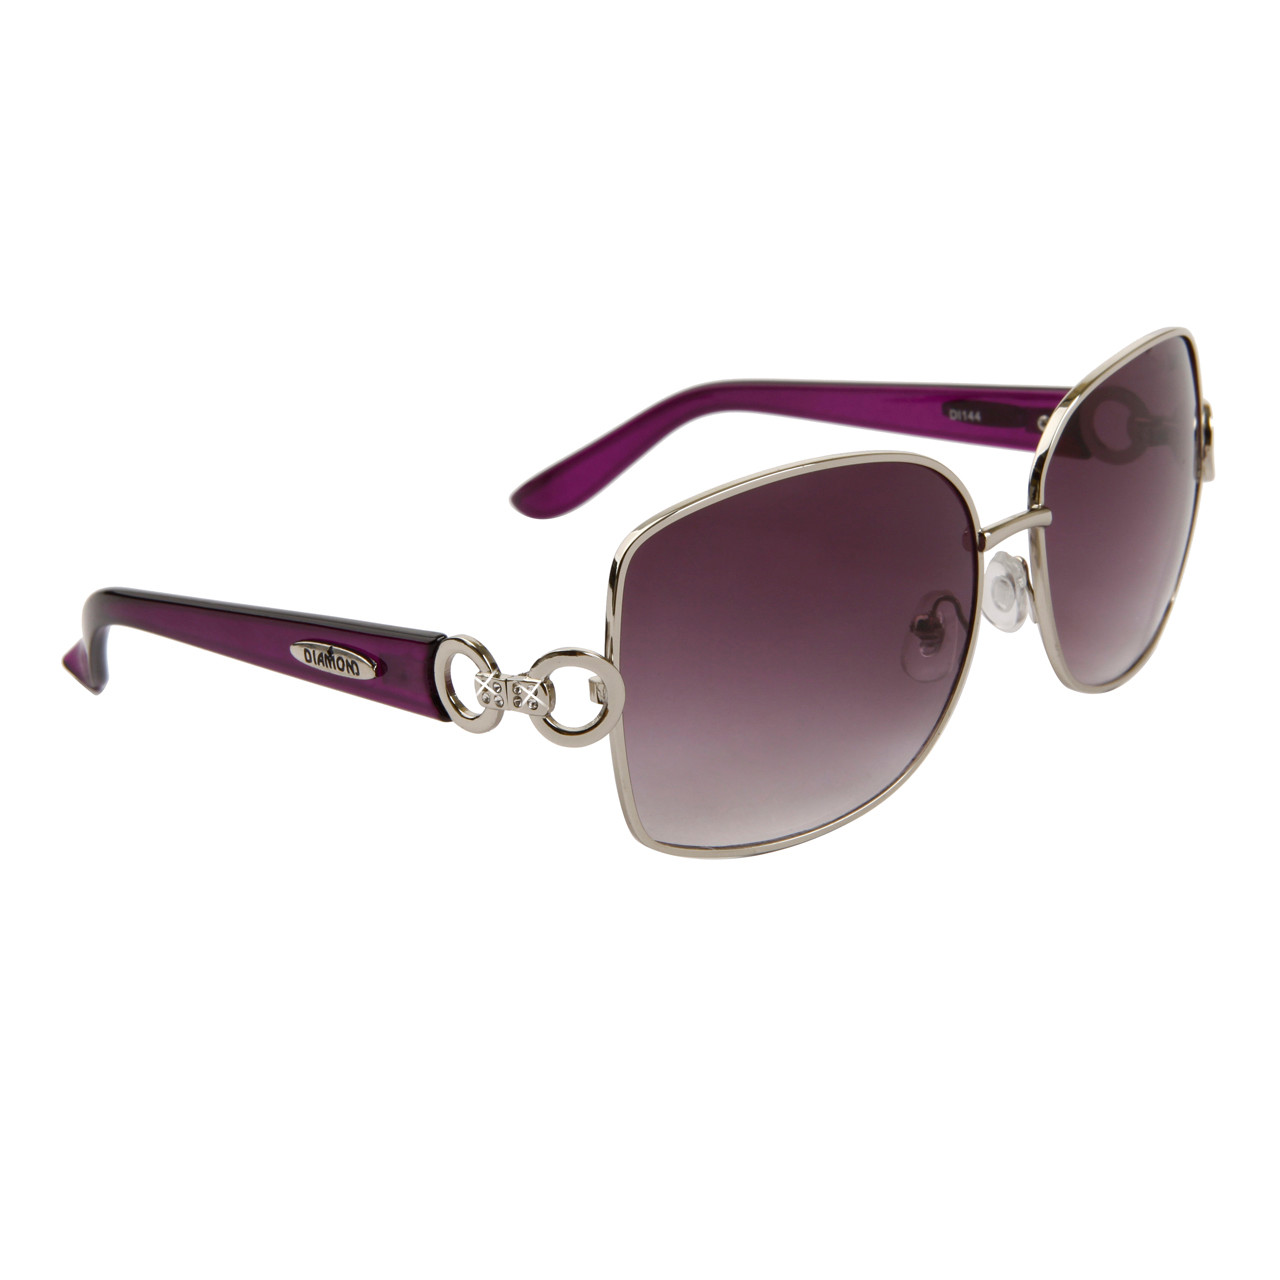 Diamond™ Rhinestone Sunglasses by the Dozen - Style # DI144 (12 pcs.)